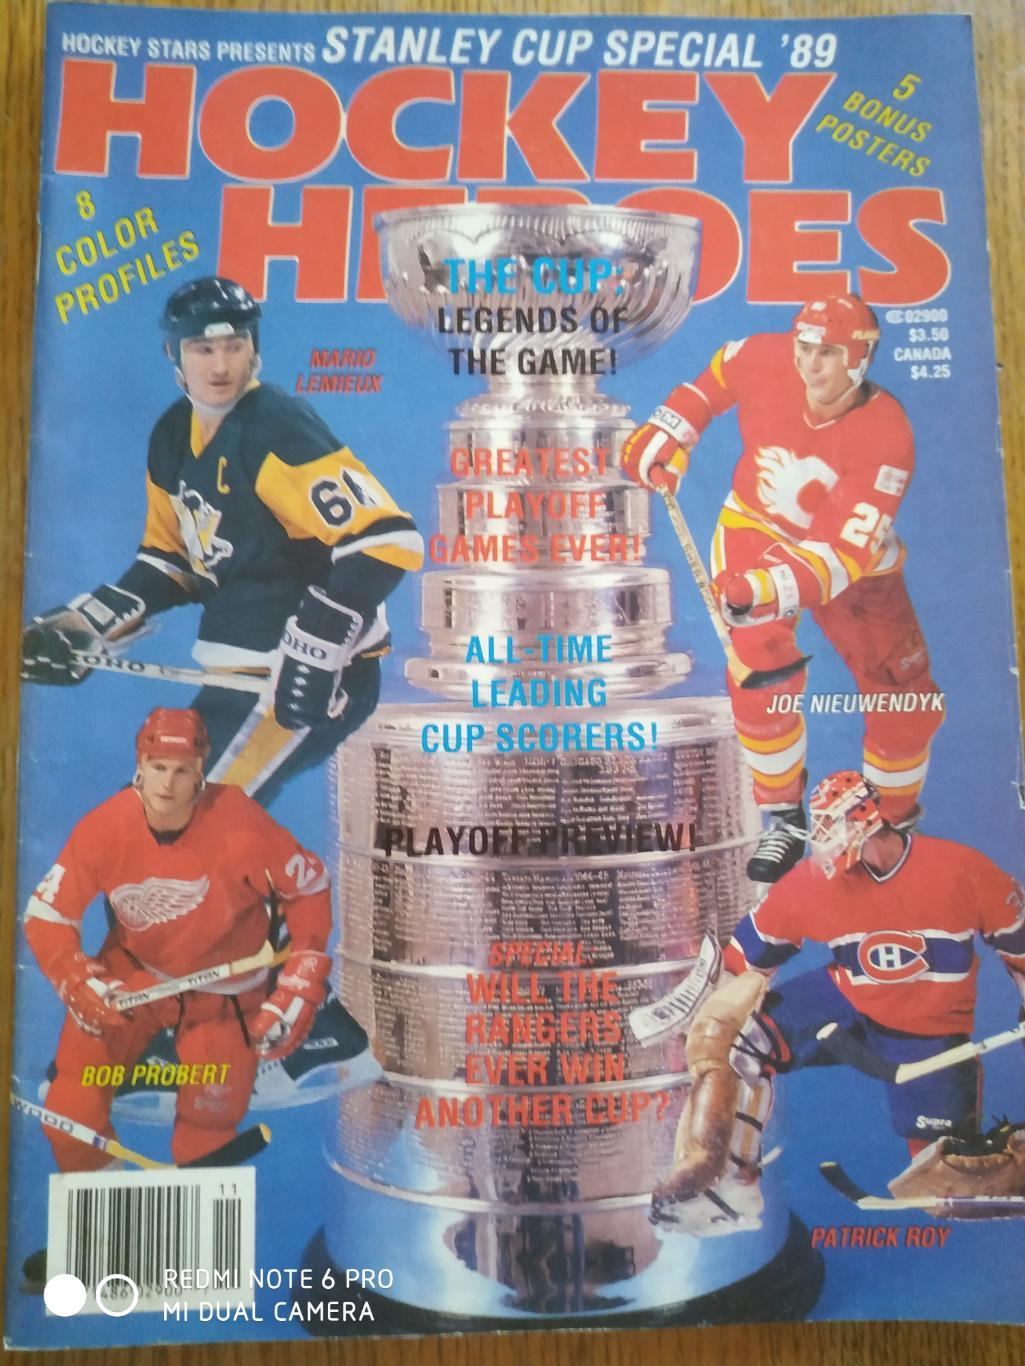 NHL 1989 HOCKEY STARS HOCKEY HEROES STANLEY CUP SPECIAL VOL.3 №3